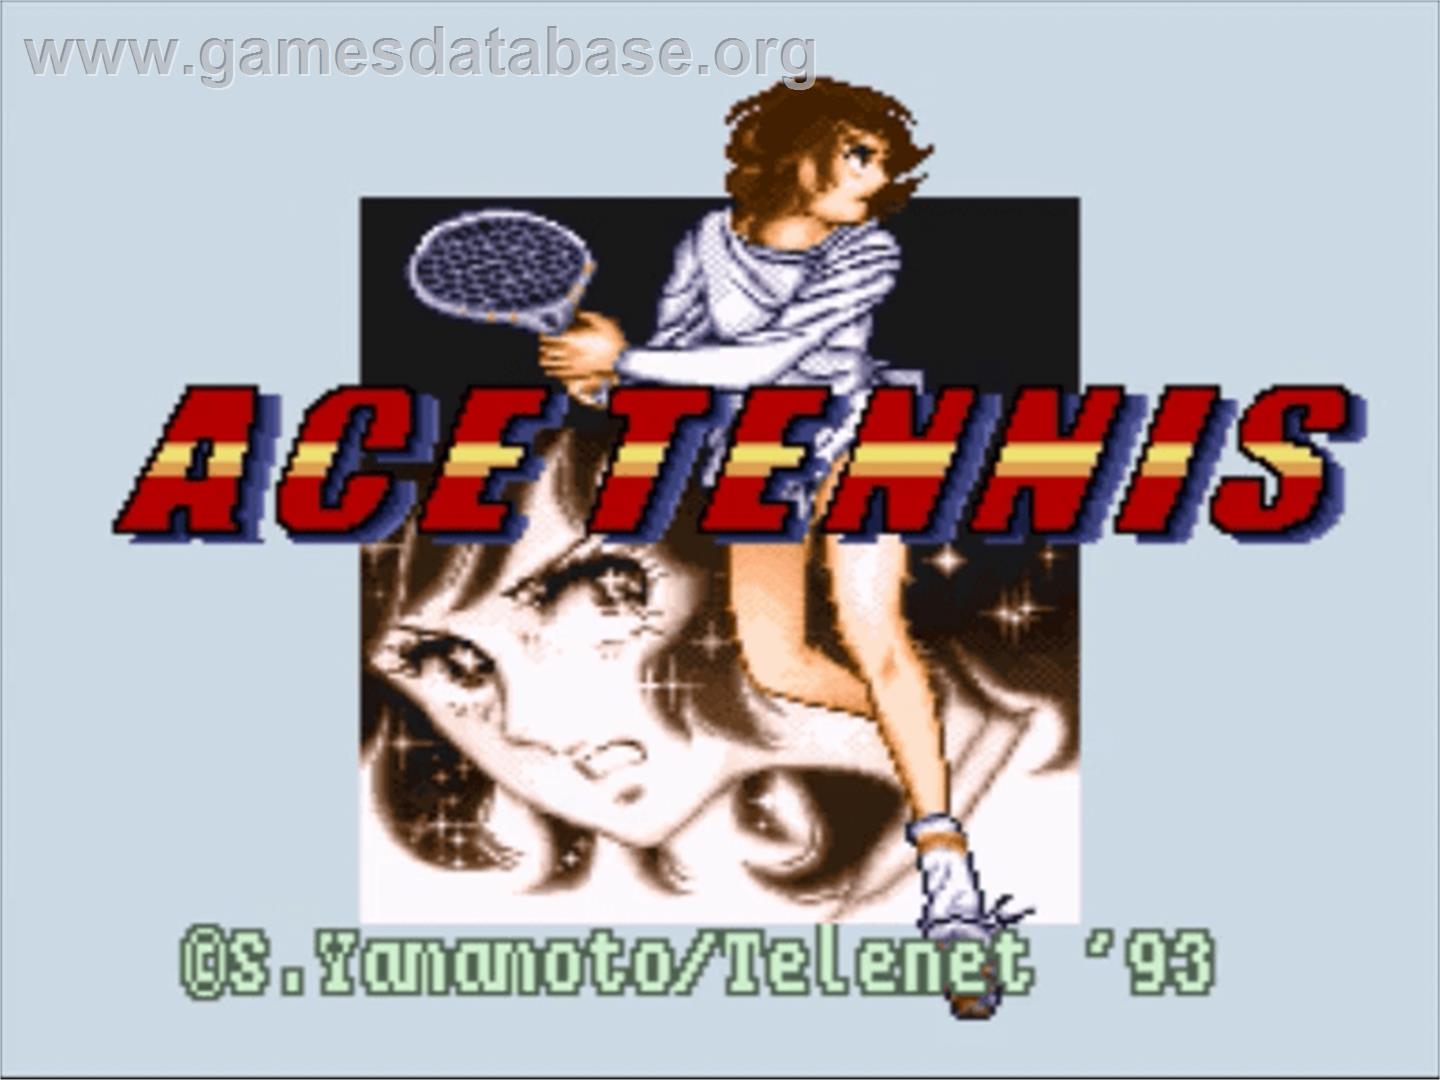 Ace o Nerae! - Nintendo SNES - Artwork - Title Screen